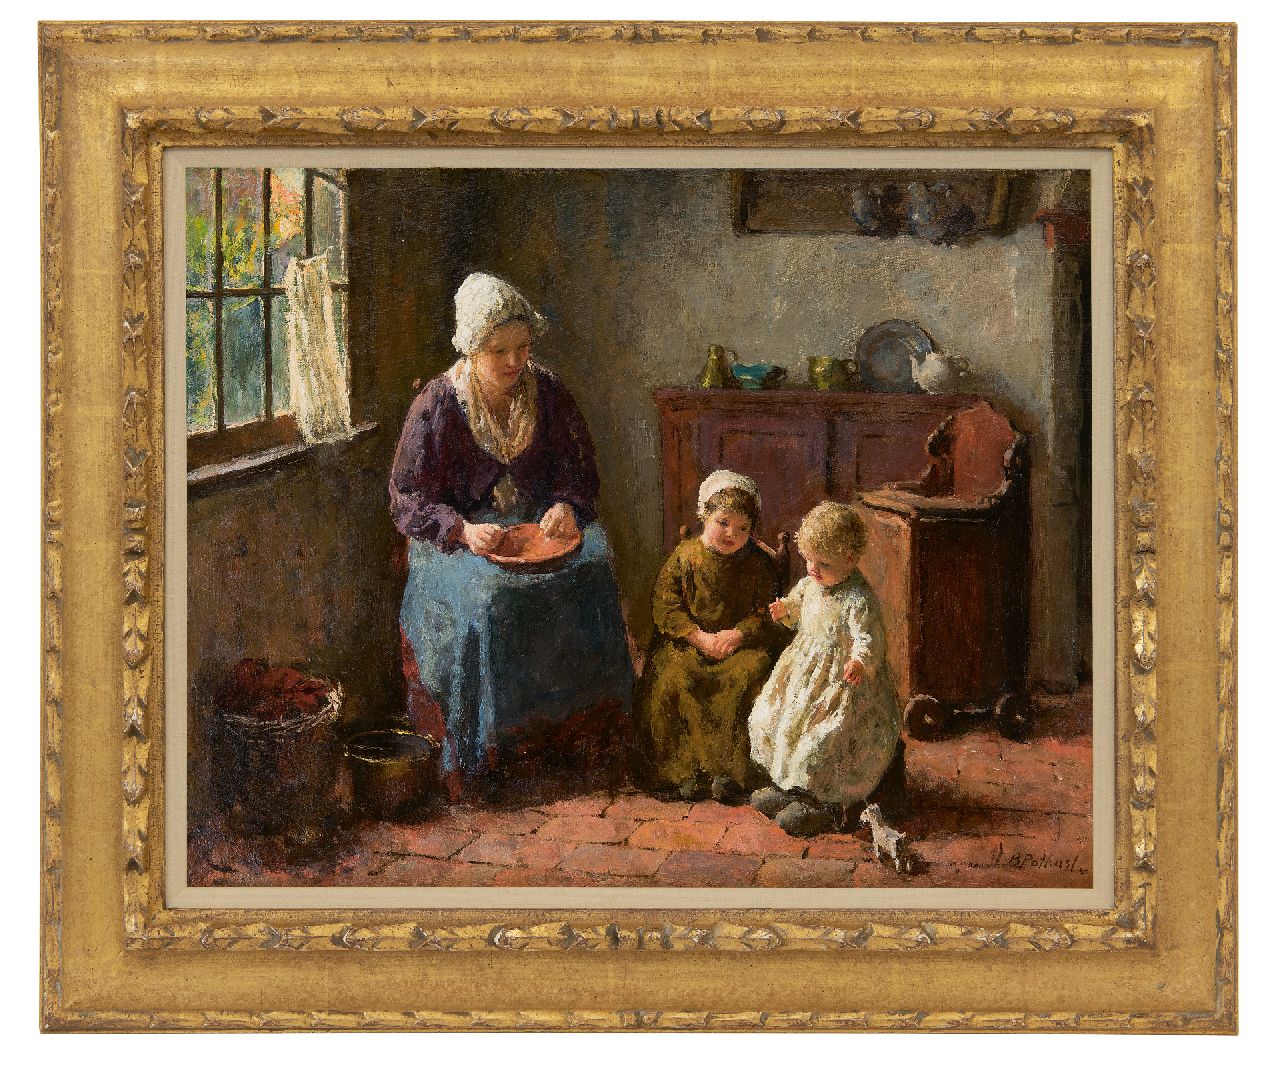 Pothast B.J.C.  | 'Bernard' Jean Corneille Pothast | Schilderijen te koop aangeboden | Moedergeluk, olieverf op doek 40,0 x 50,0 cm, gesigneerd rechtsonder